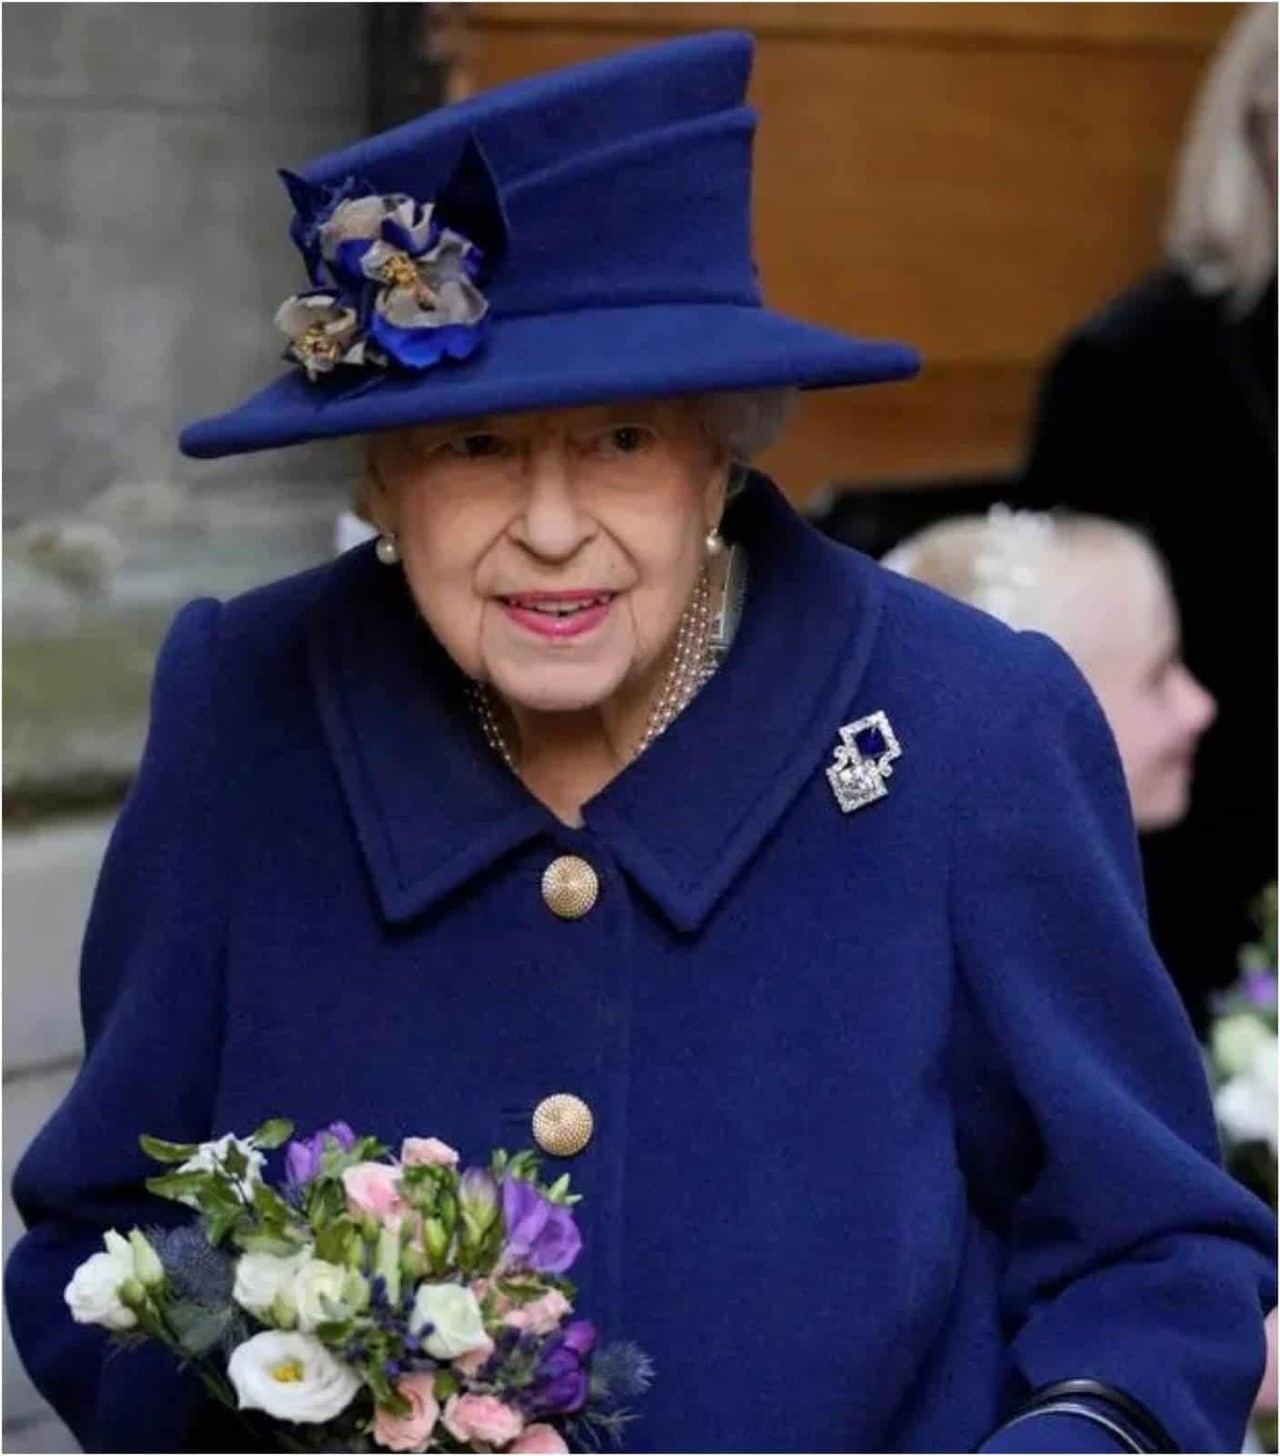 Sorprende reina Isabel II al usar bastón en acto público